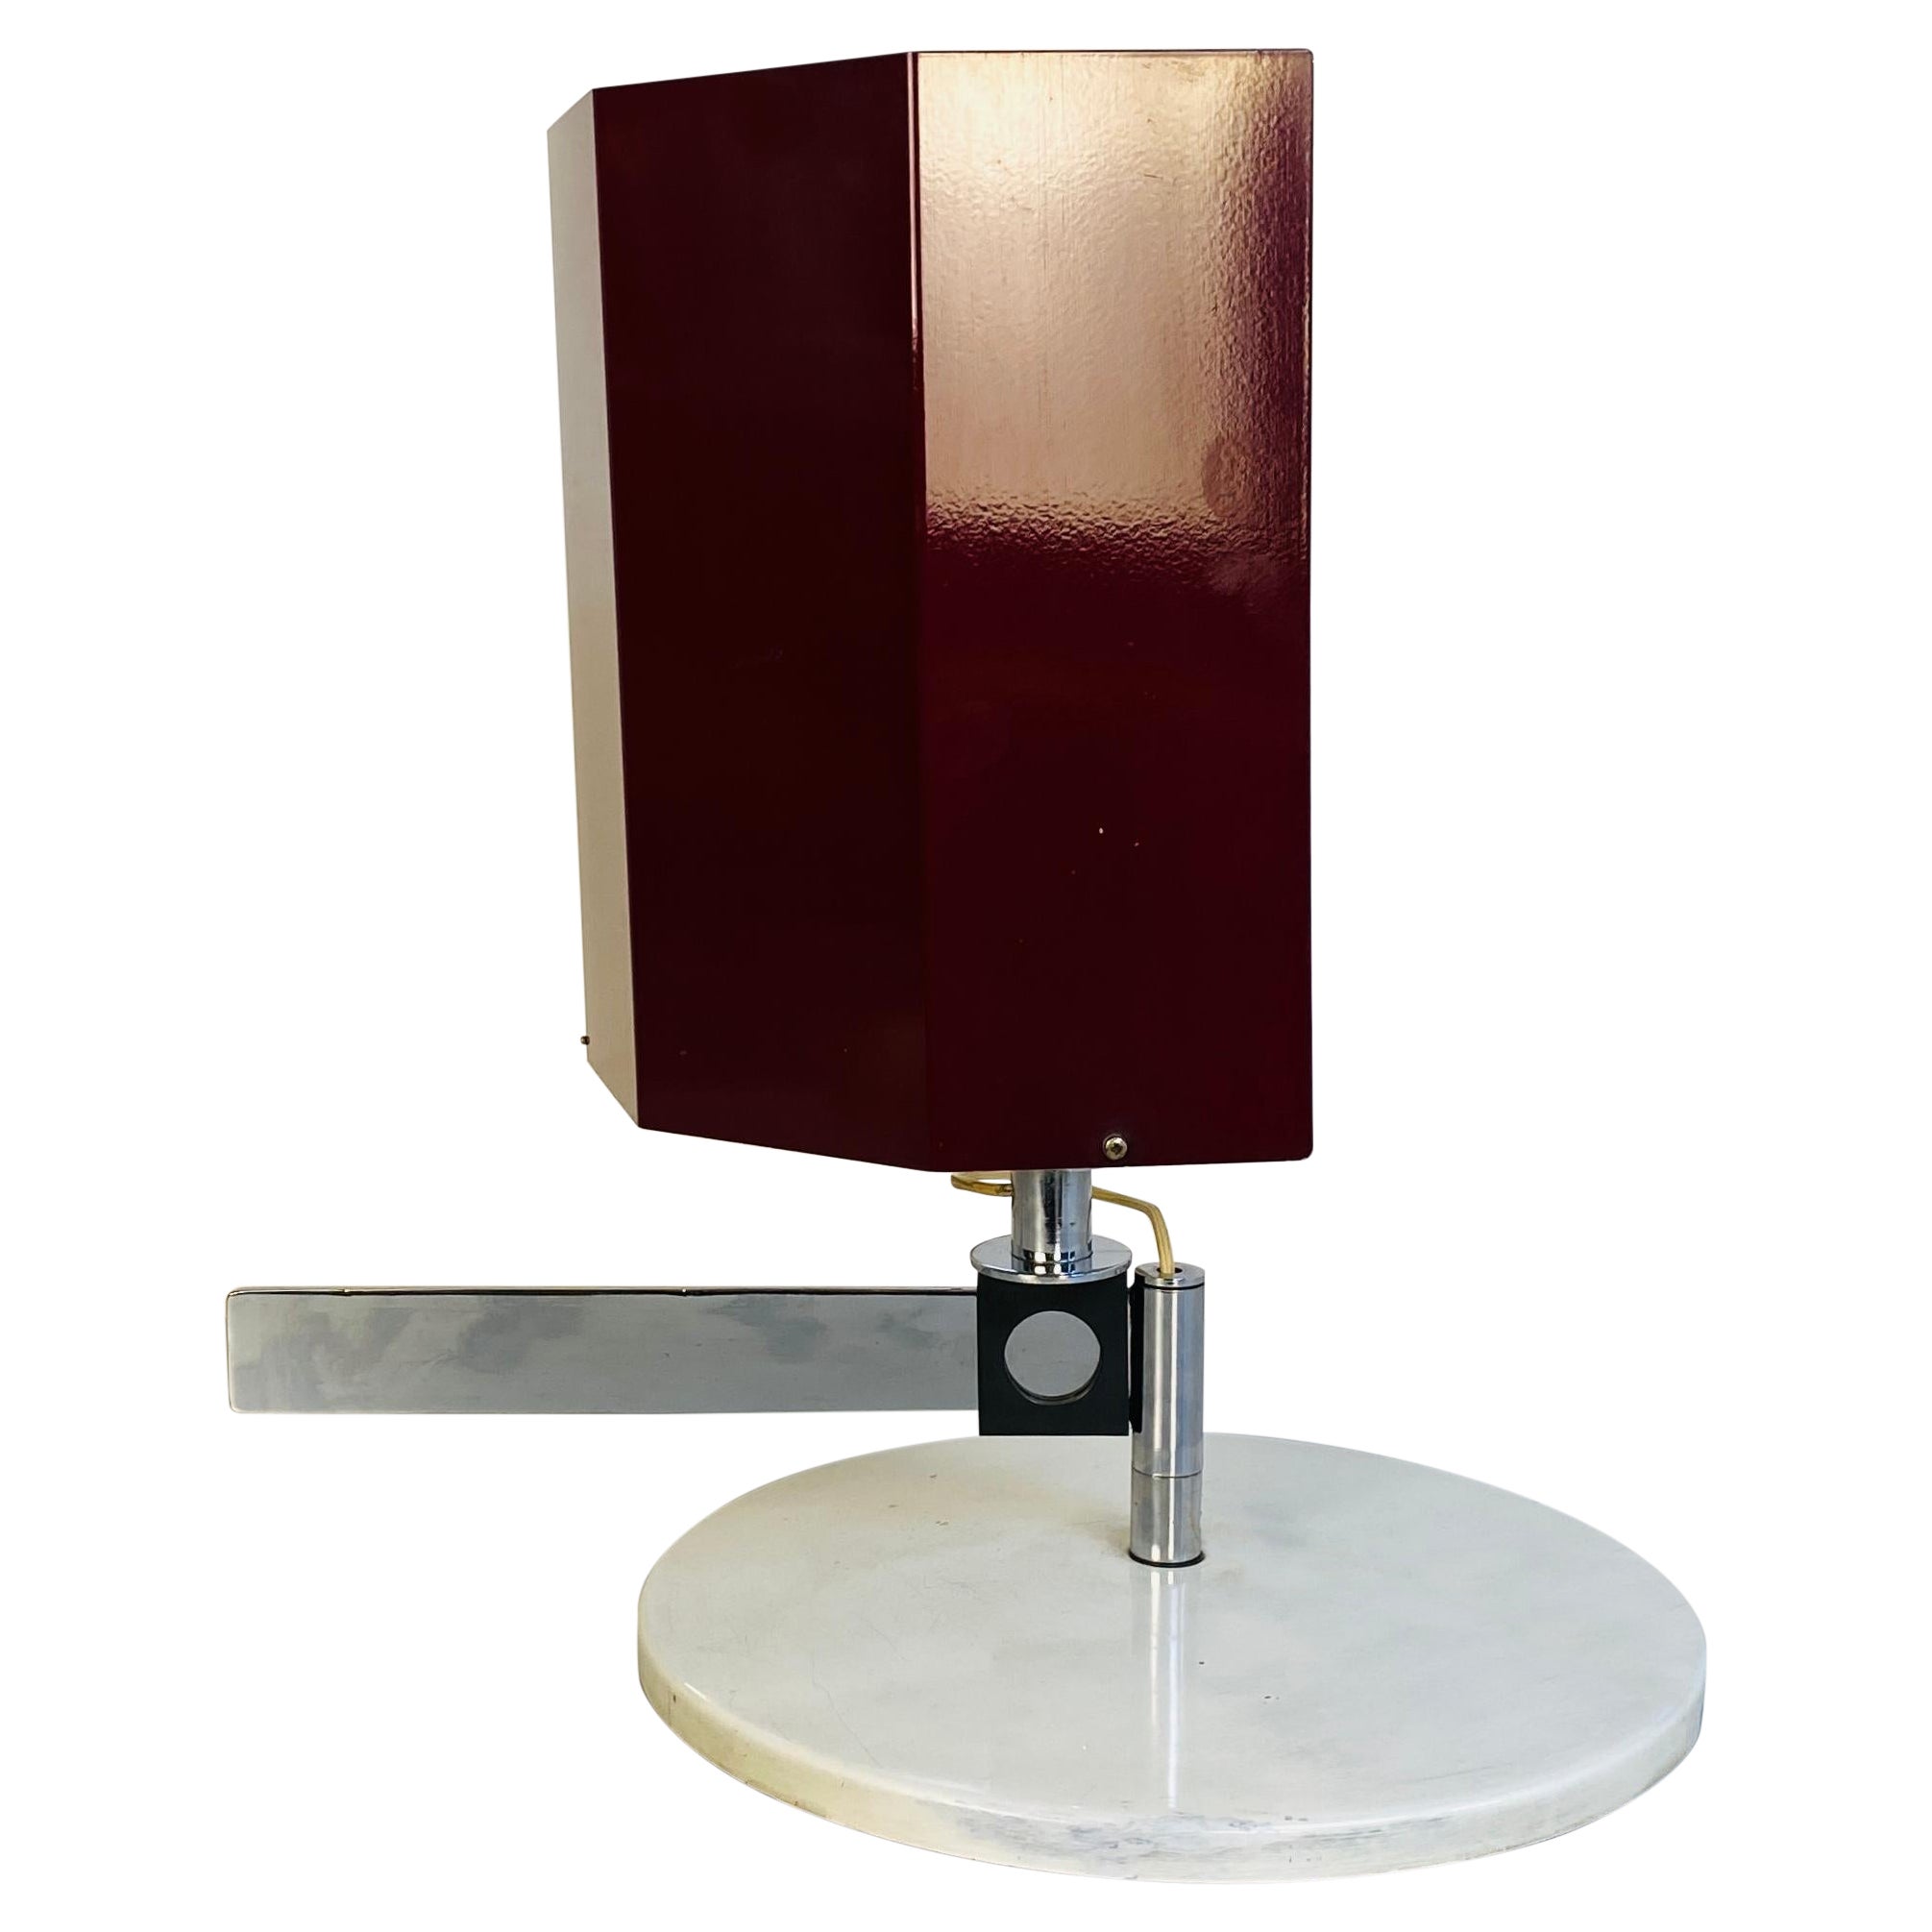 Italienische Bauhaus-Metall-Tischlampe von Carl Jacob Jucker für Imago DP, 1960er Jahre